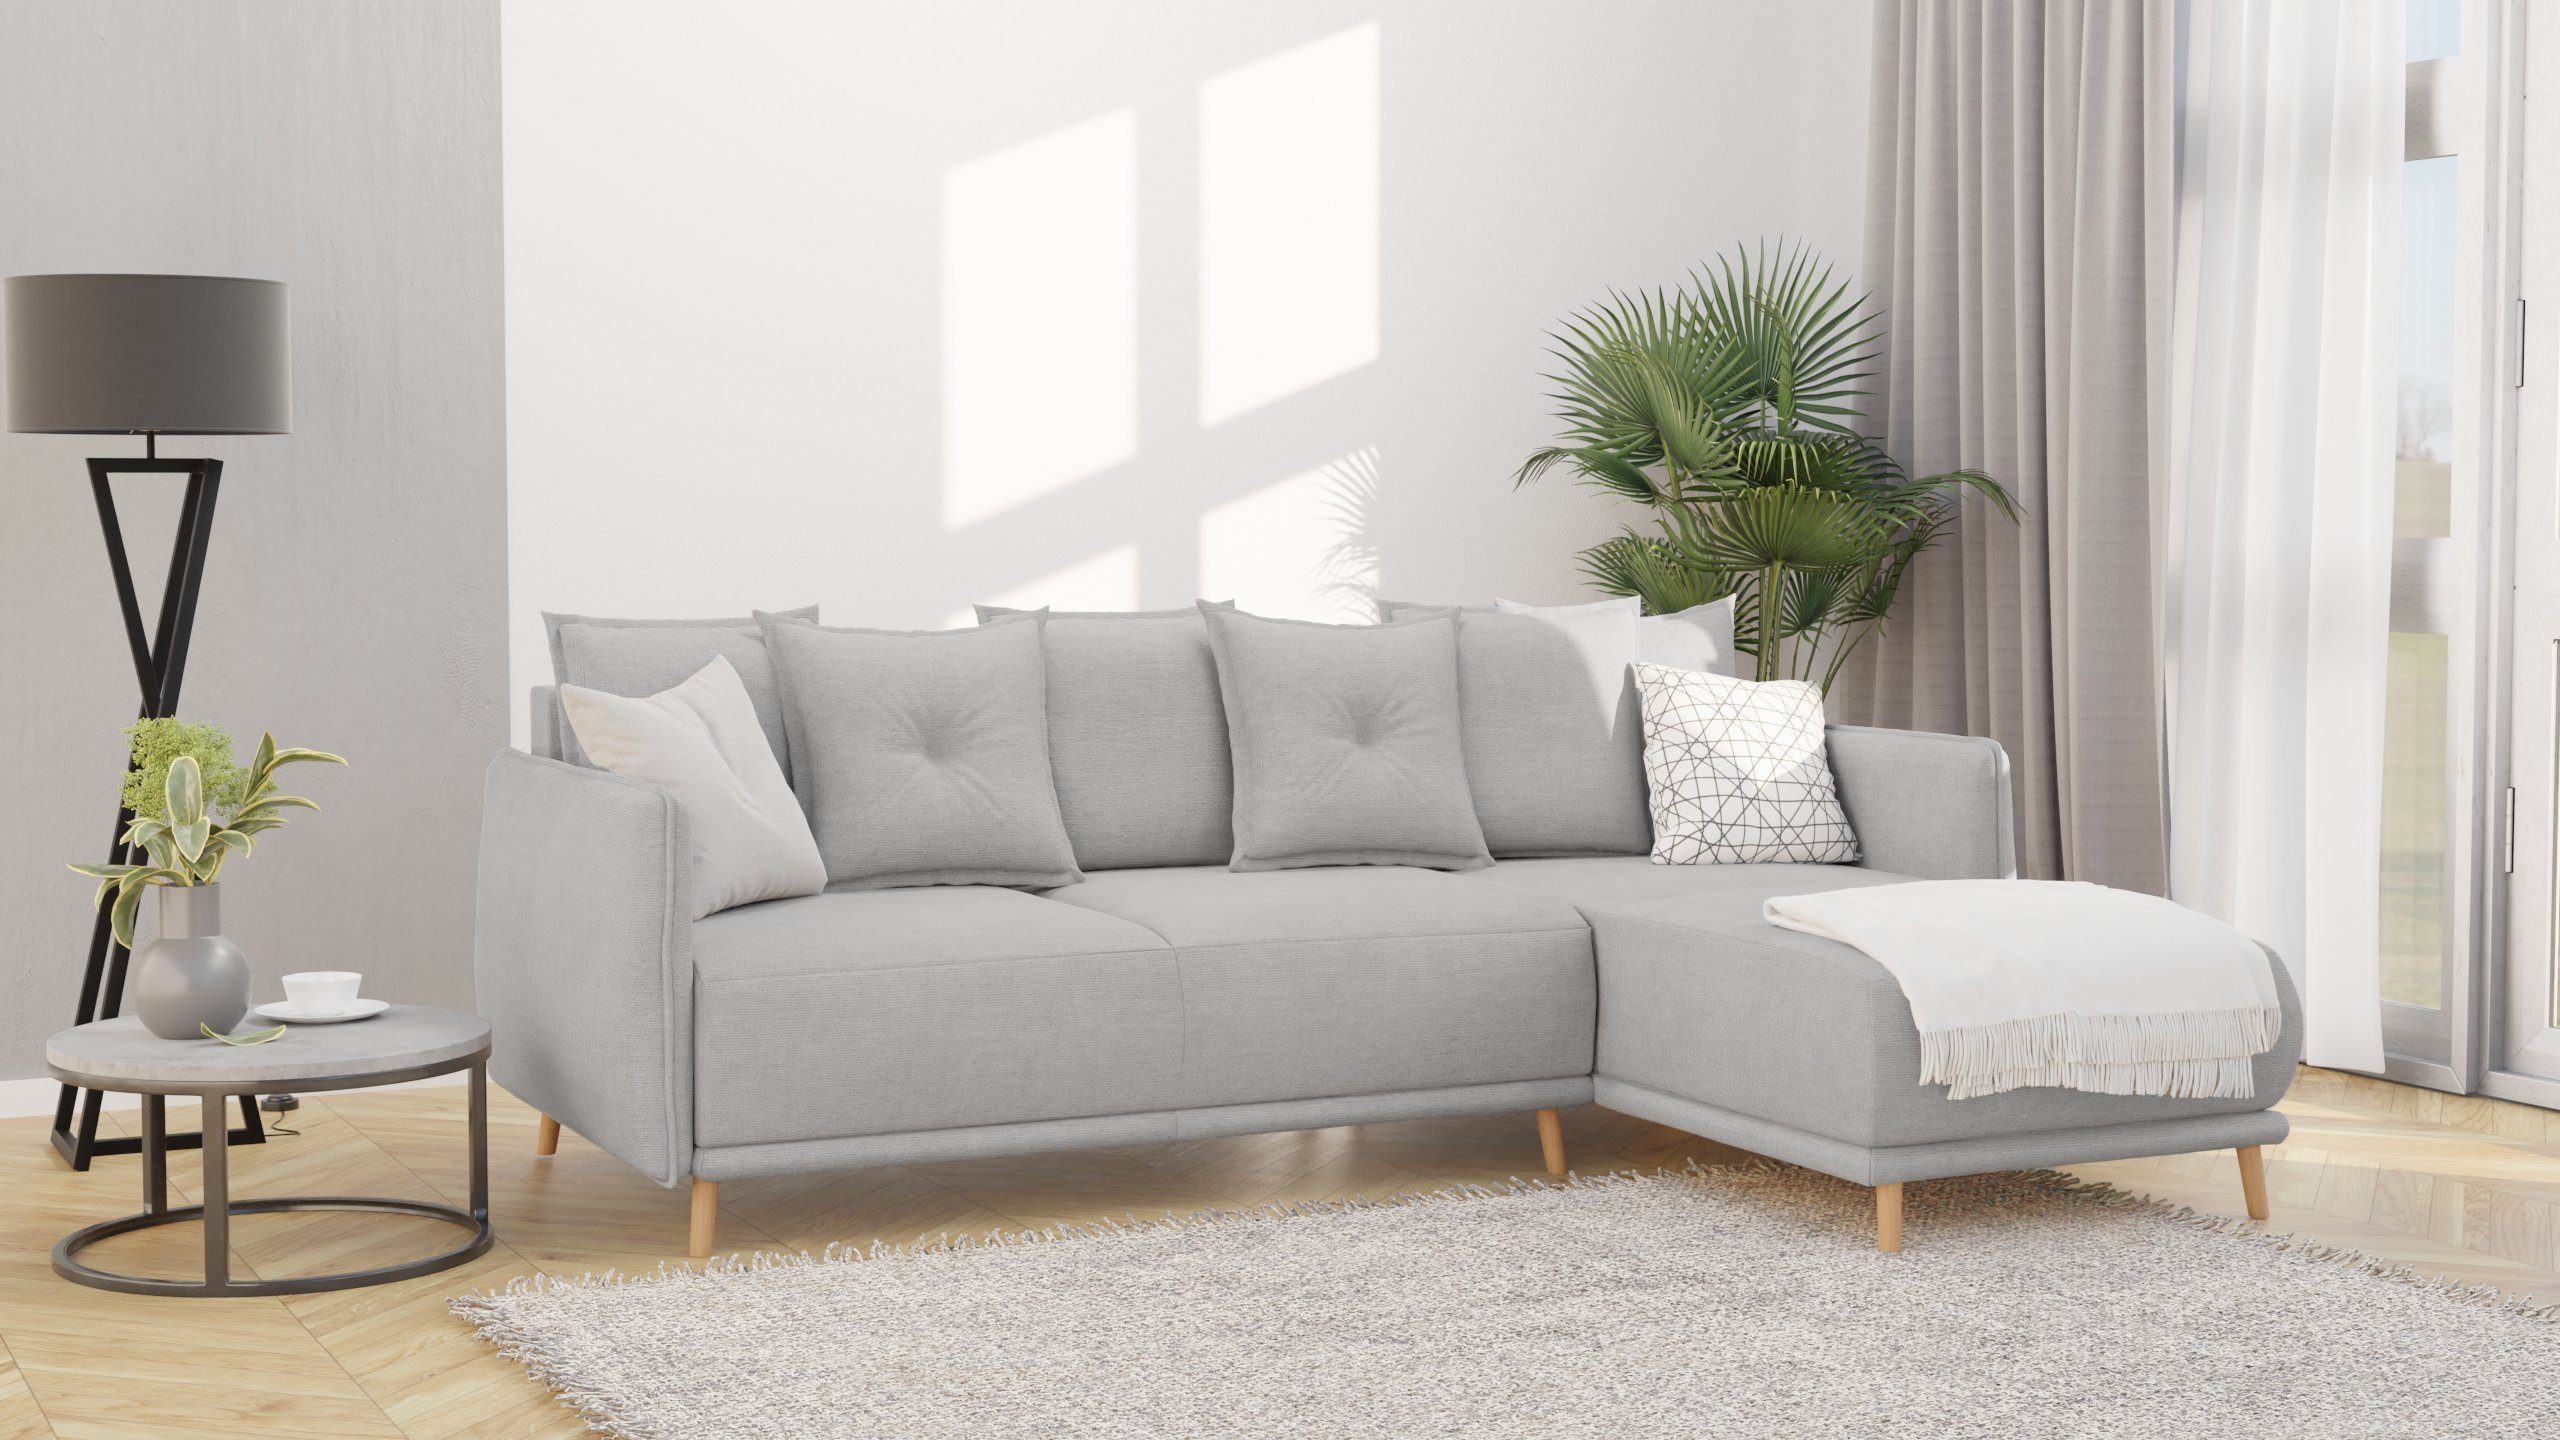 S-Style Möbel Ecksofa Lina mit Bettfunktion und Bettkasten im skandinavischen Design, mane links oder rechts bestellbar, mit Wellenfederung Silber